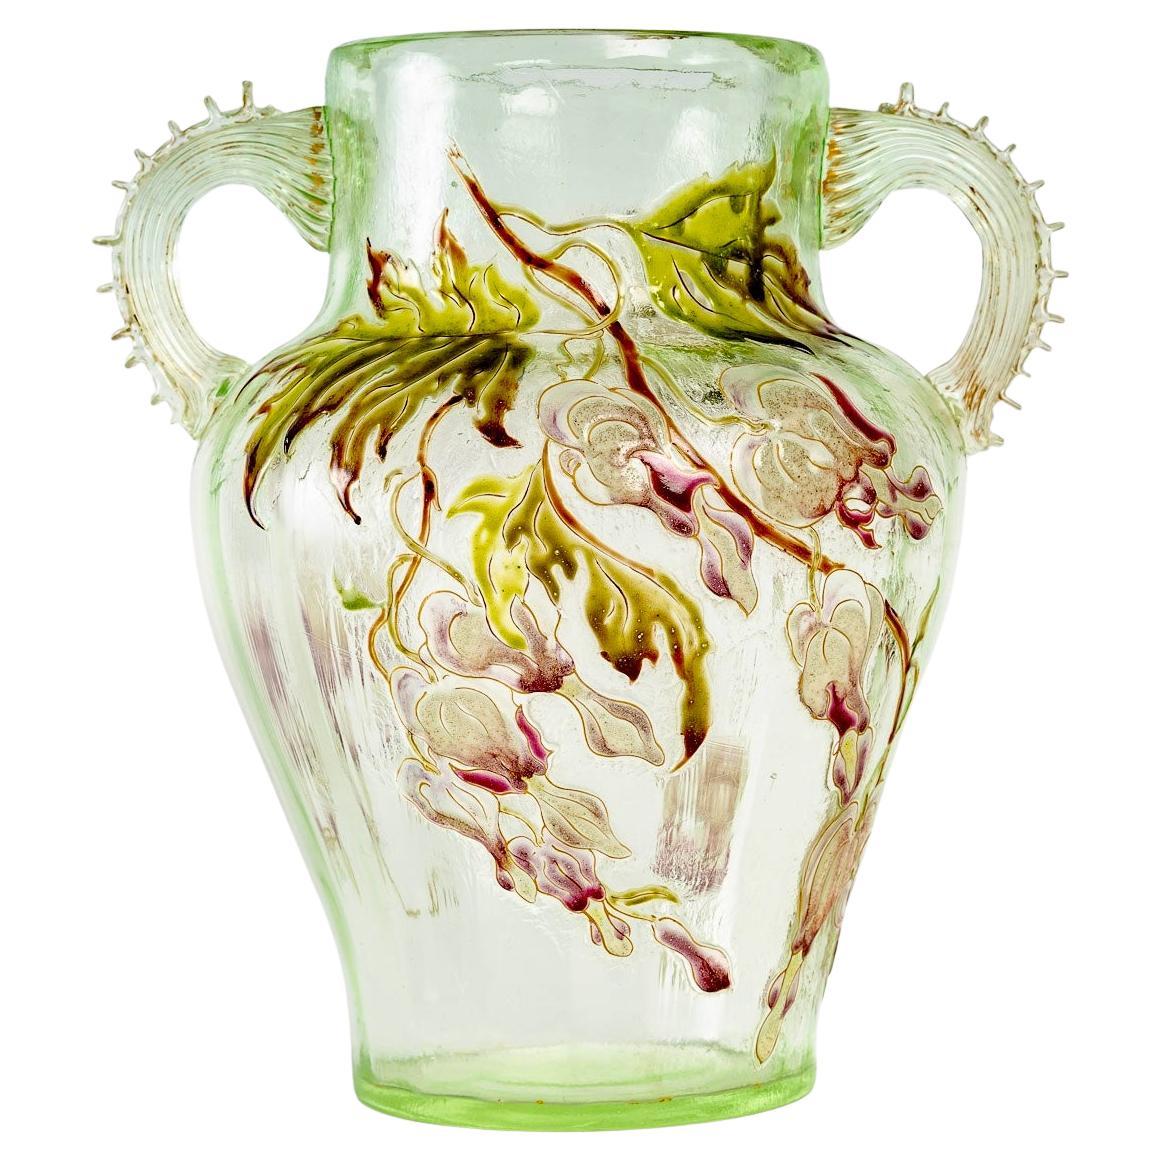 1890 Emile Gallé - Vase Cristallerie Handles Light Green Glass Enameled Flowers